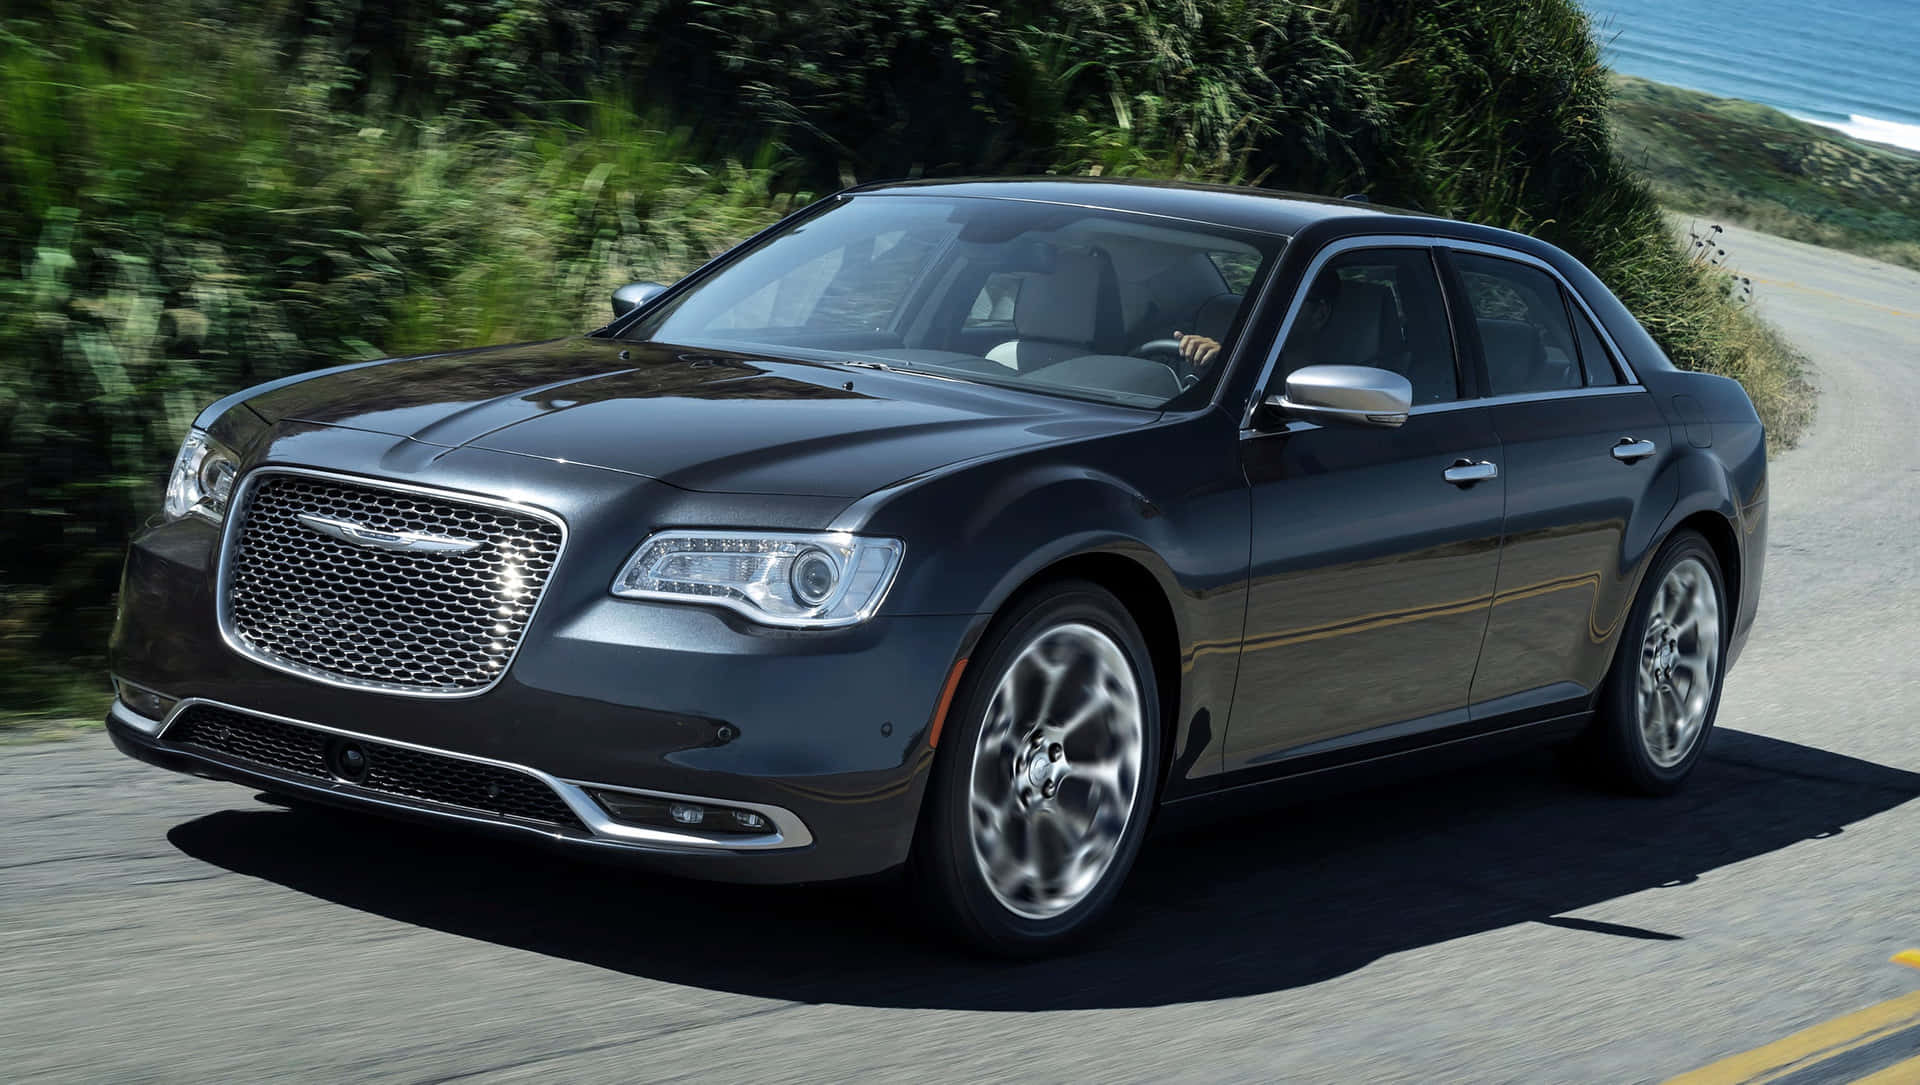 Chryslerpacifica: Kør Ind I Fremtiden Med Stilfuld Komfort Og Sikkerhed.